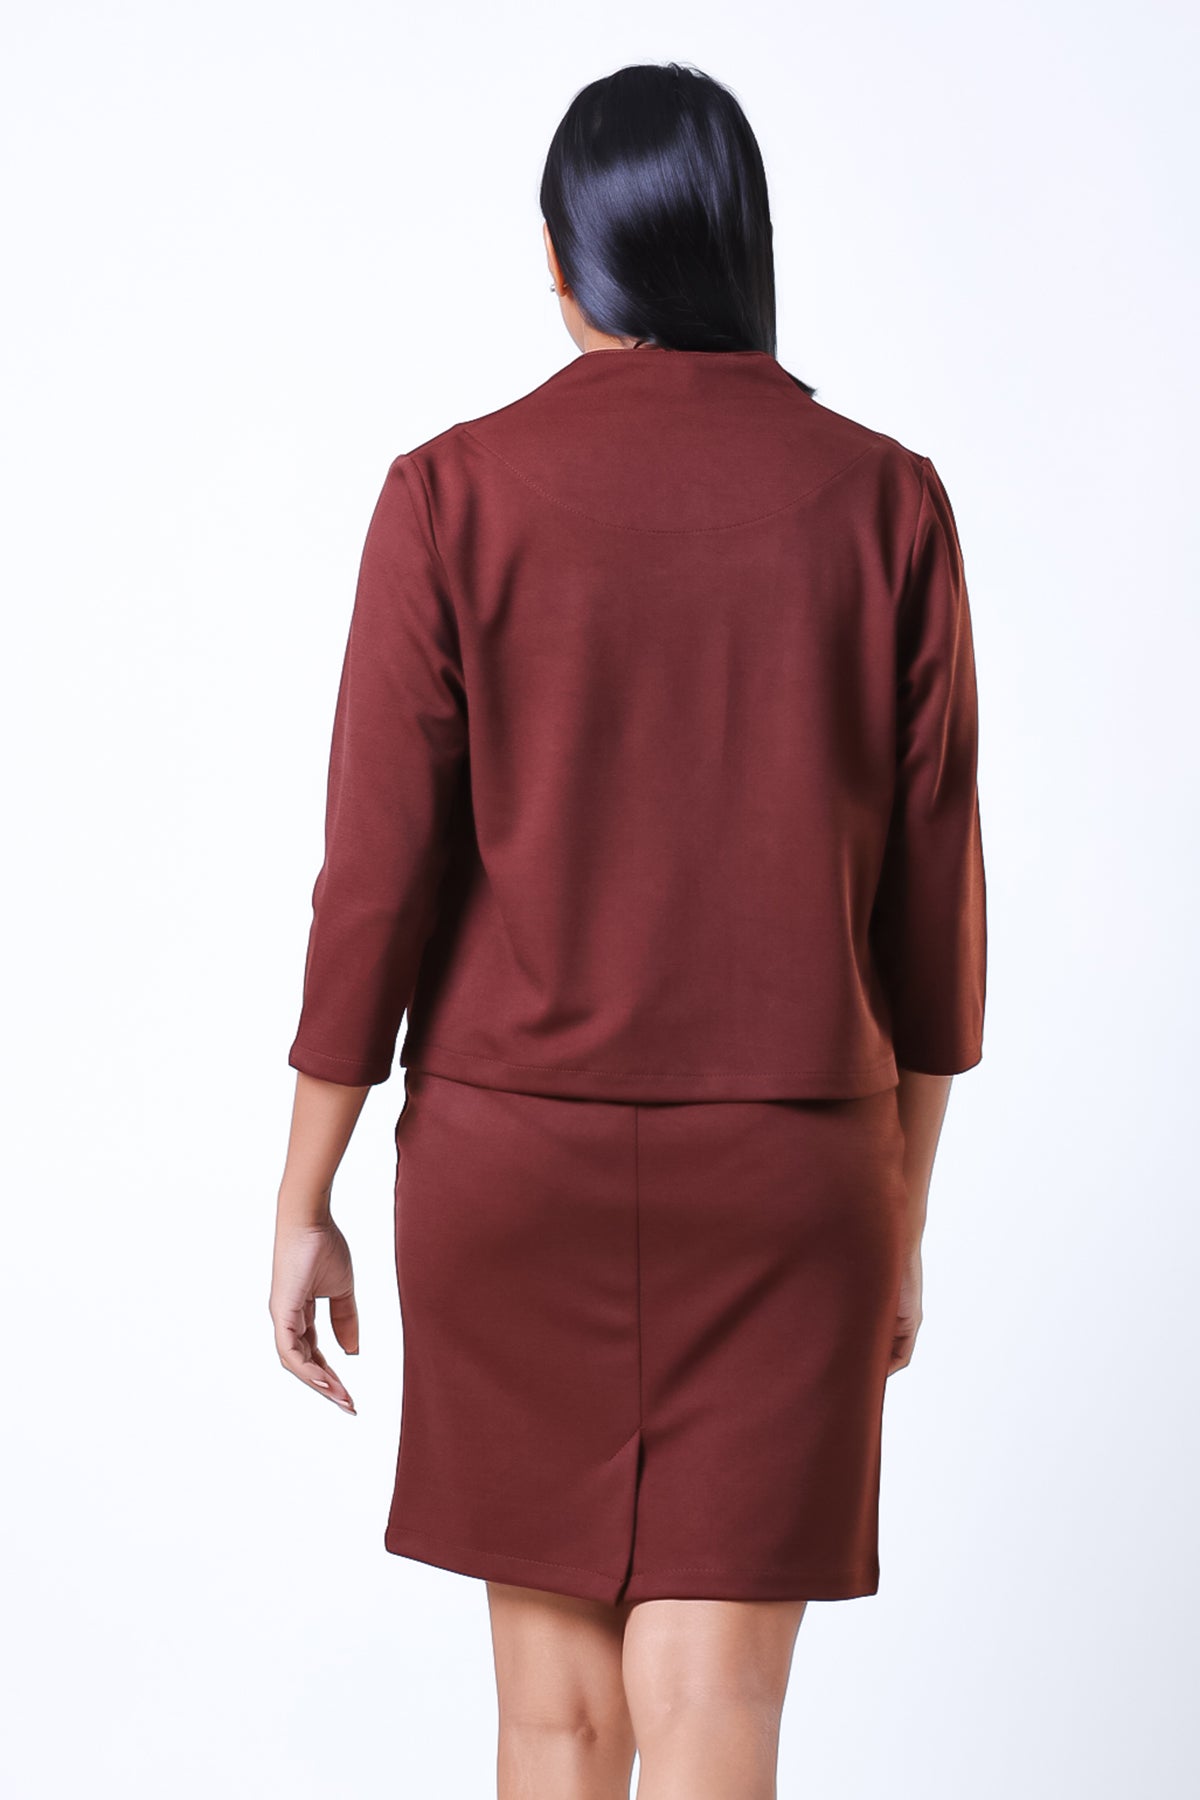 Envogue Women's With Back Slit Office Mini Skirt